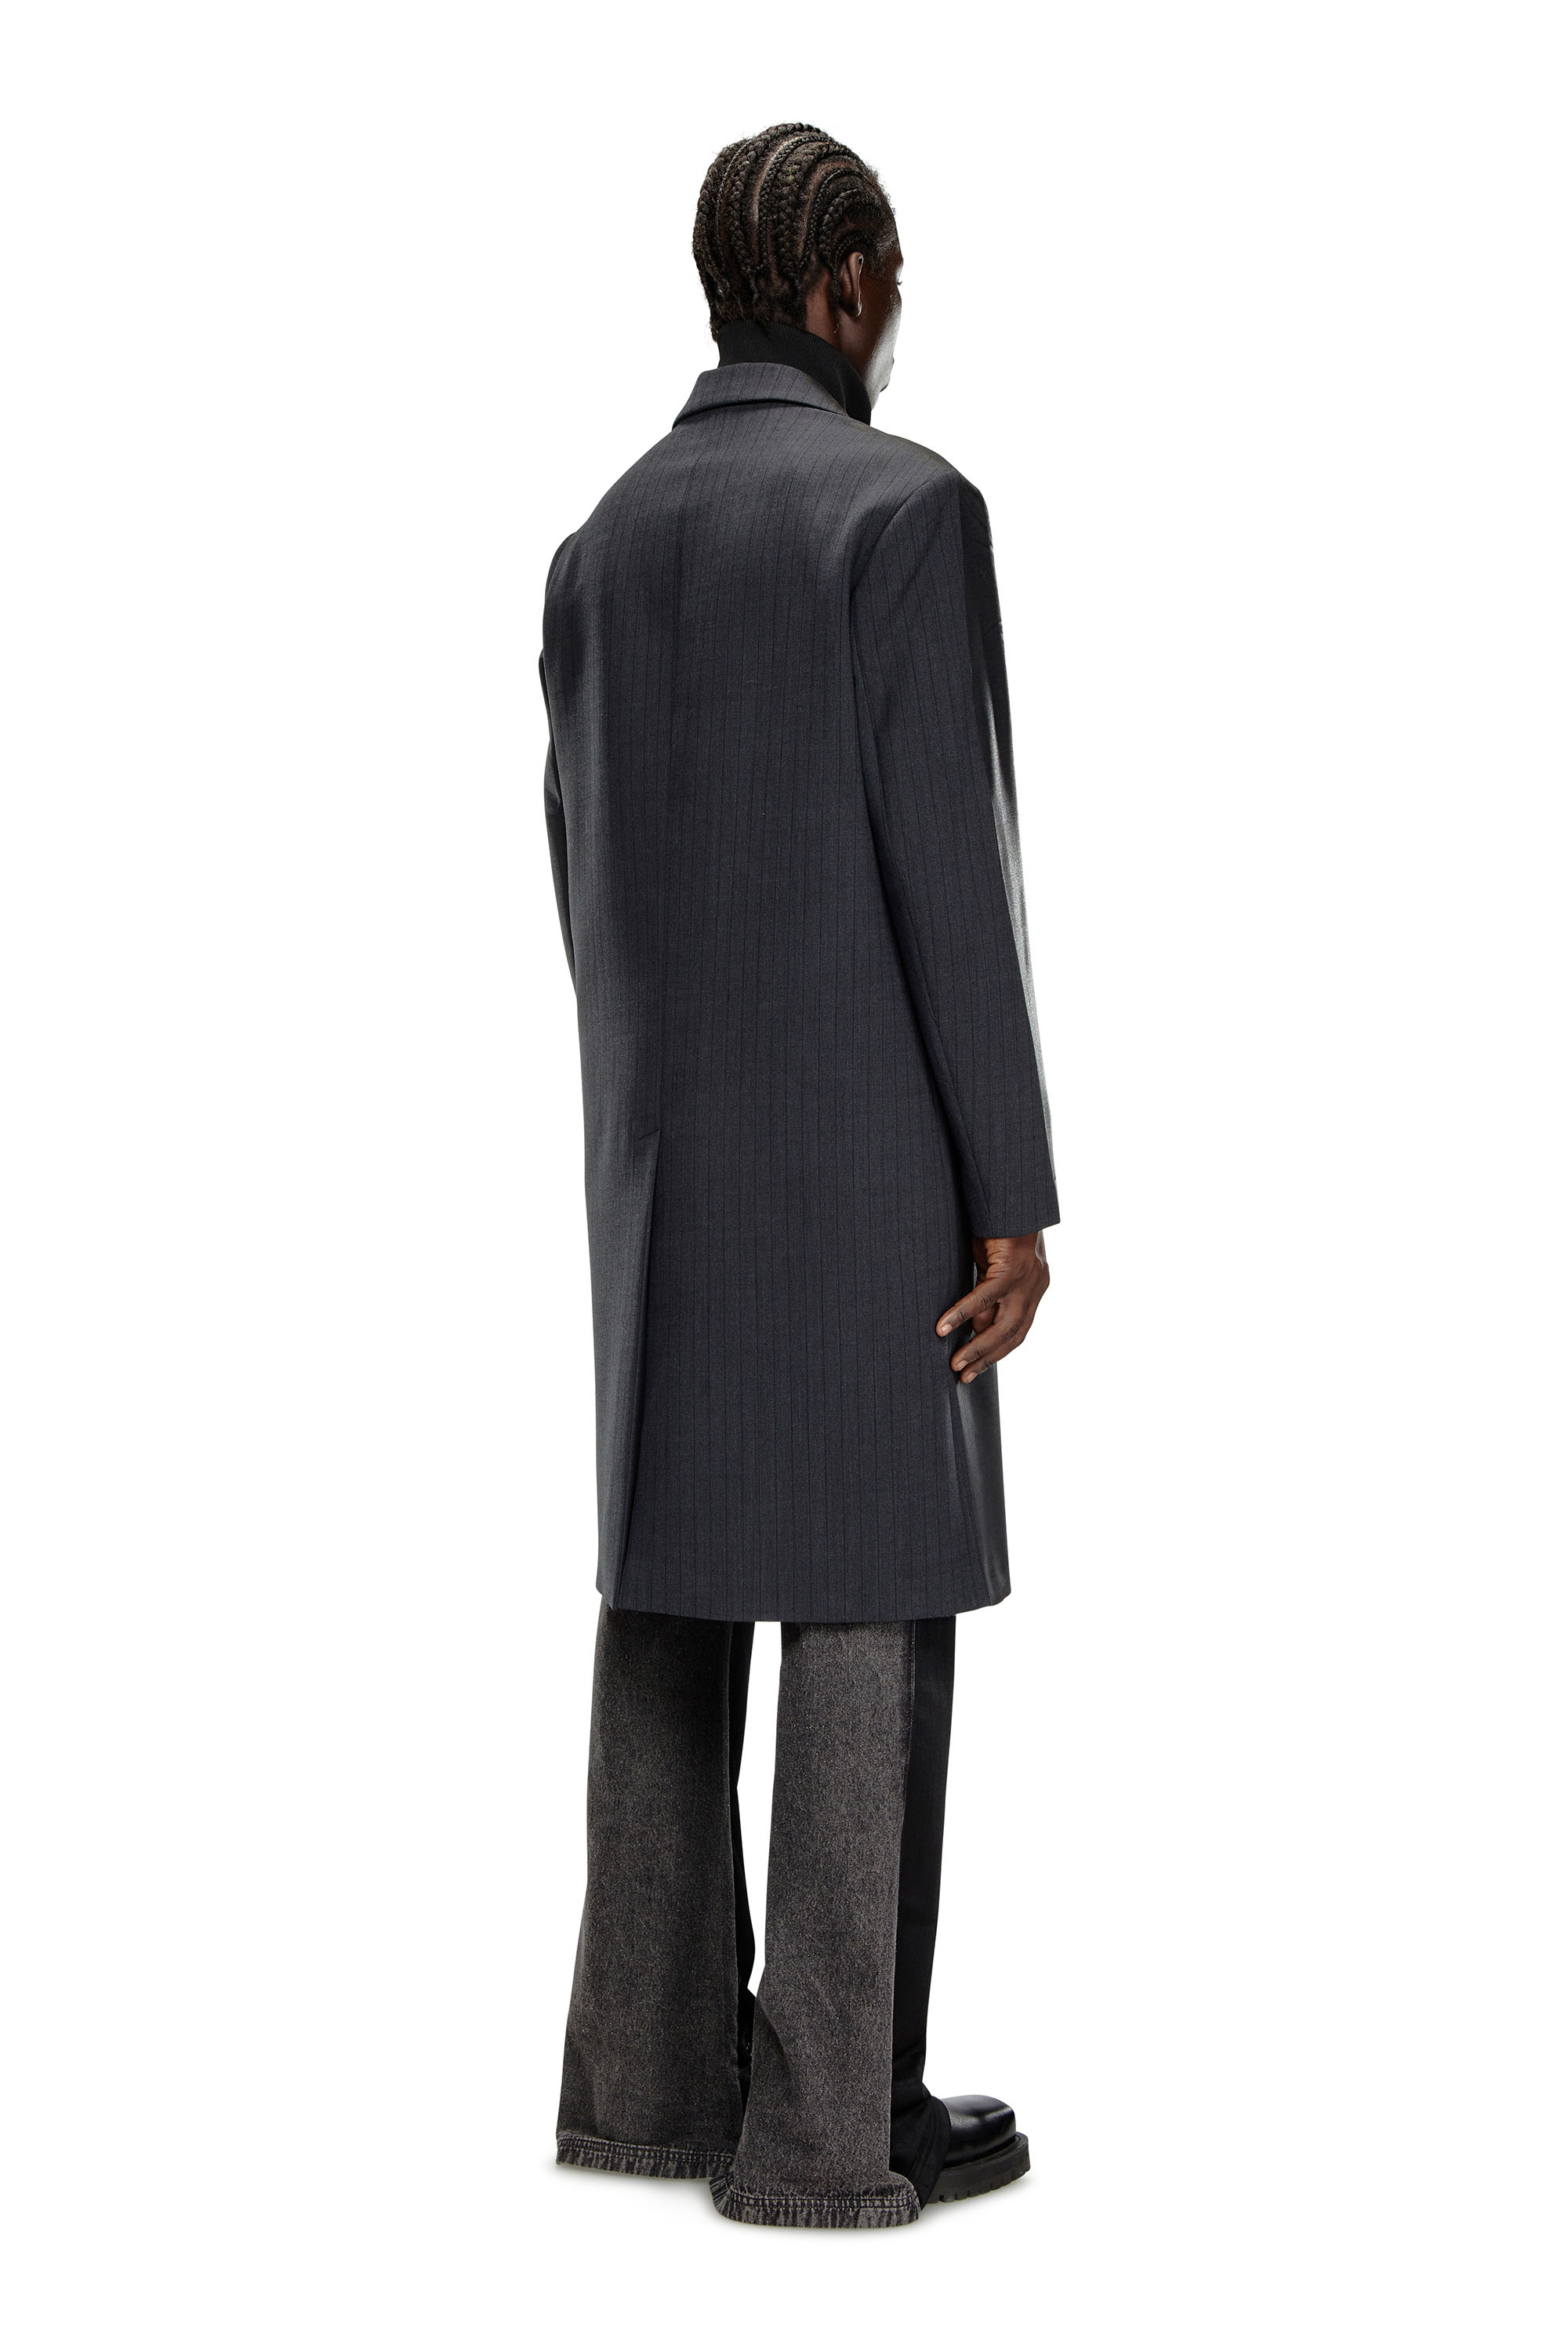 Diesel - J-DENNER, Male Coat in pinstriped cool wool in Black - Image 3